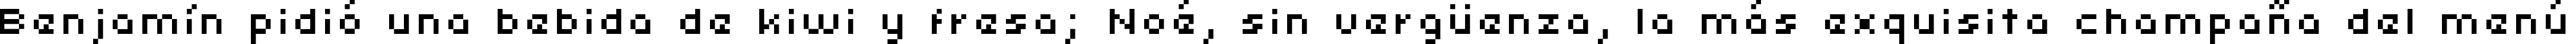 Пример написания шрифтом uni 05_54 текста на испанском